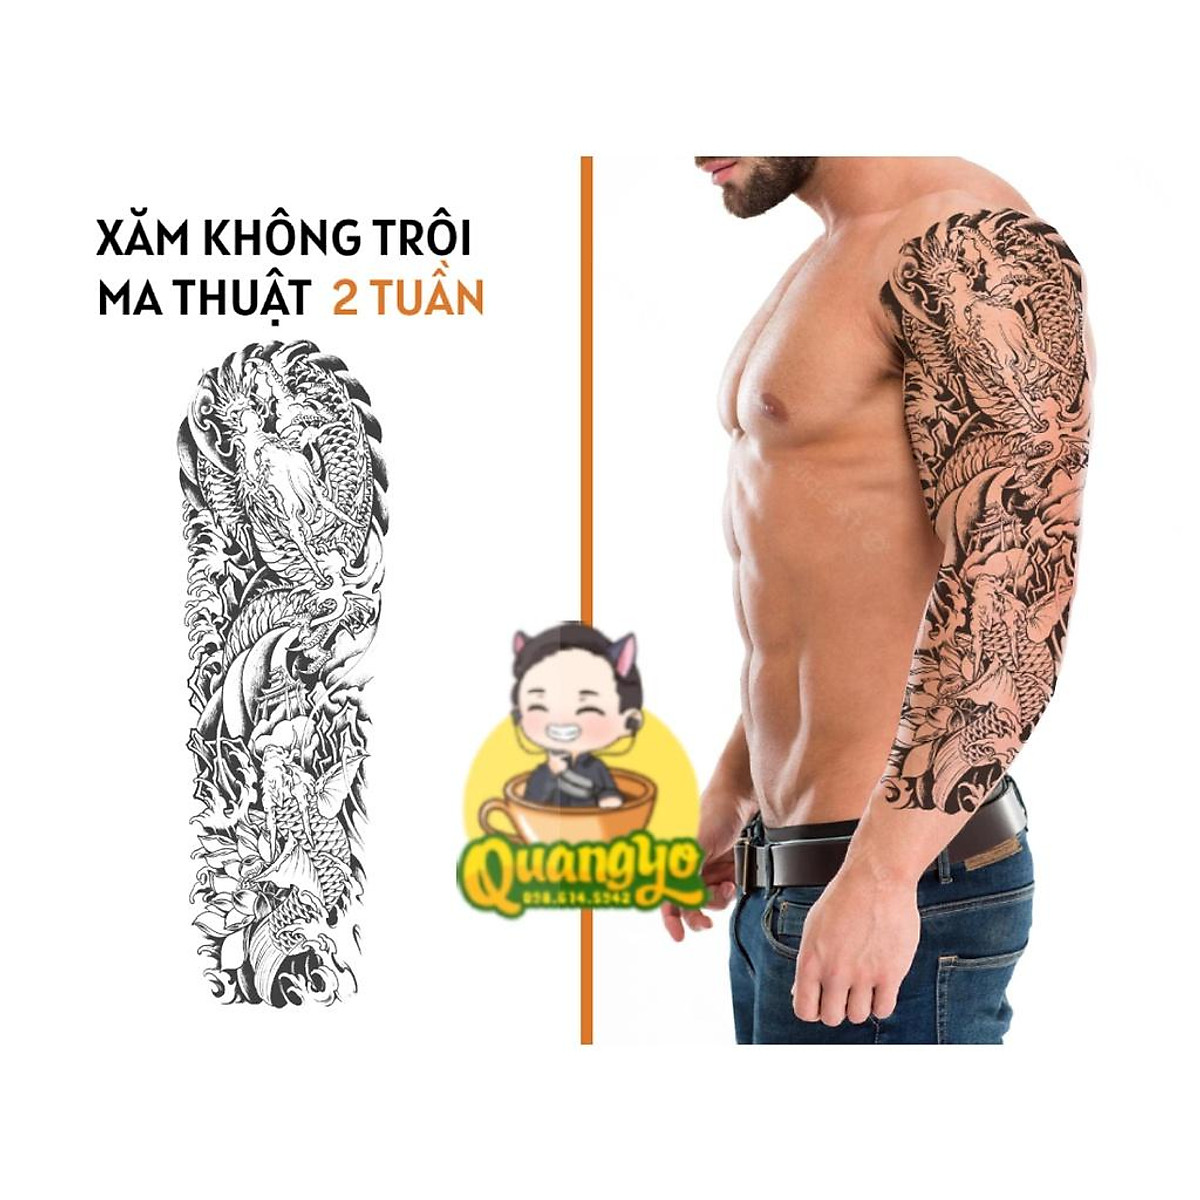 Set 10 Tờ Tattoo Miếng Dán Hình Xăm 15 Ngày Mini Hoa Bỉ Ngạn Hồng Sấm Sét  Chữ Tiếng Nhật Cá Voi Dao Legaxi  MixASale